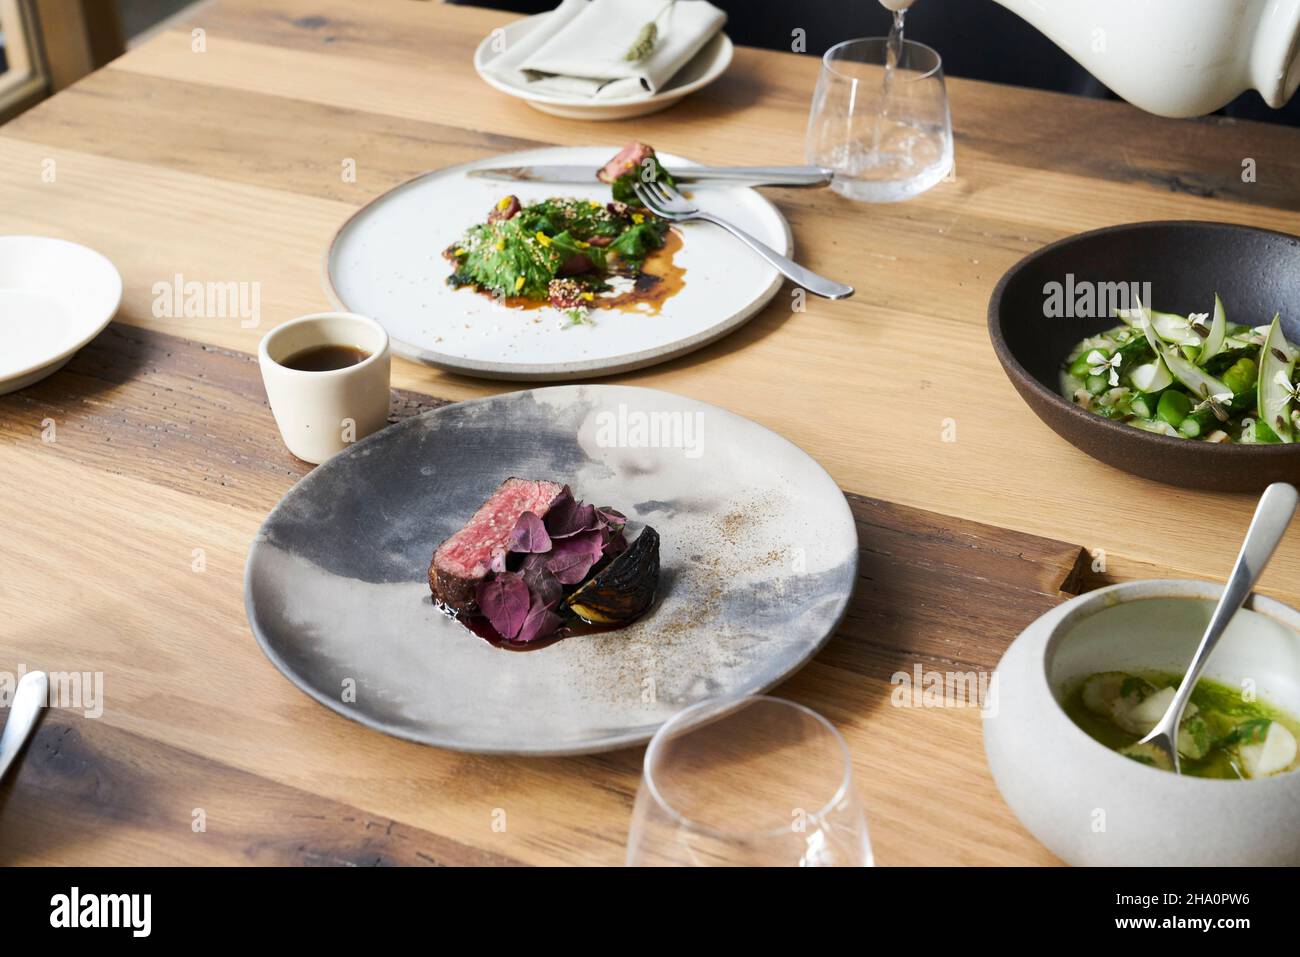 Groupe de plats modernes frais pour un repas gastronomique sur une table en bois Banque D'Images